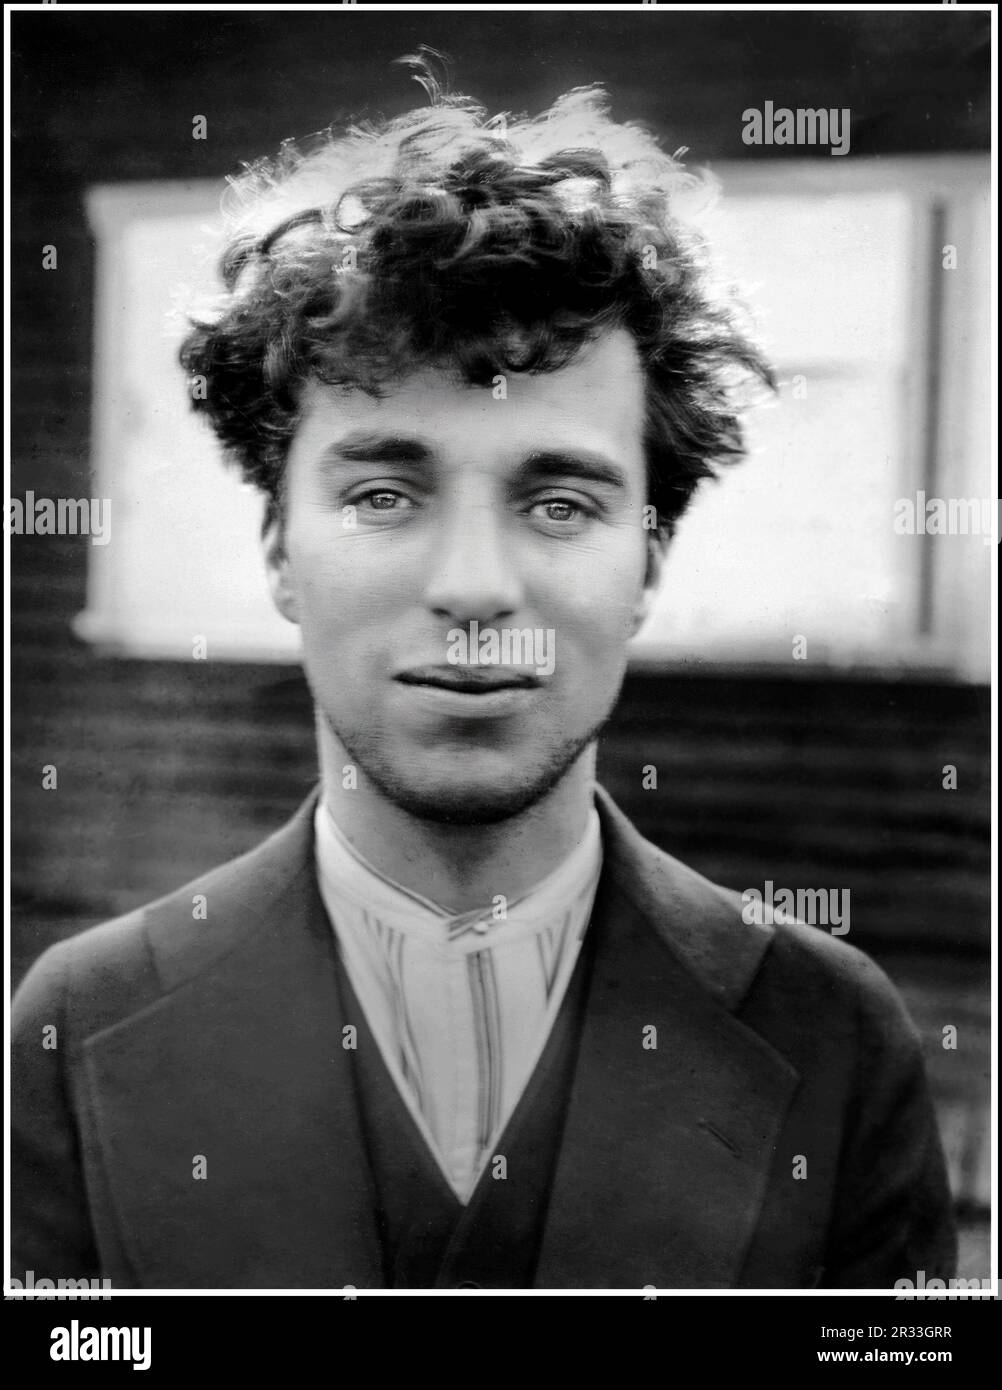 Charlie Chaplin 1900s le reportage informel de l'acteur de cinéma a restauré le portrait de B&W à l'extérieur comme un jeune homme pris vers 1916 Banque D'Images